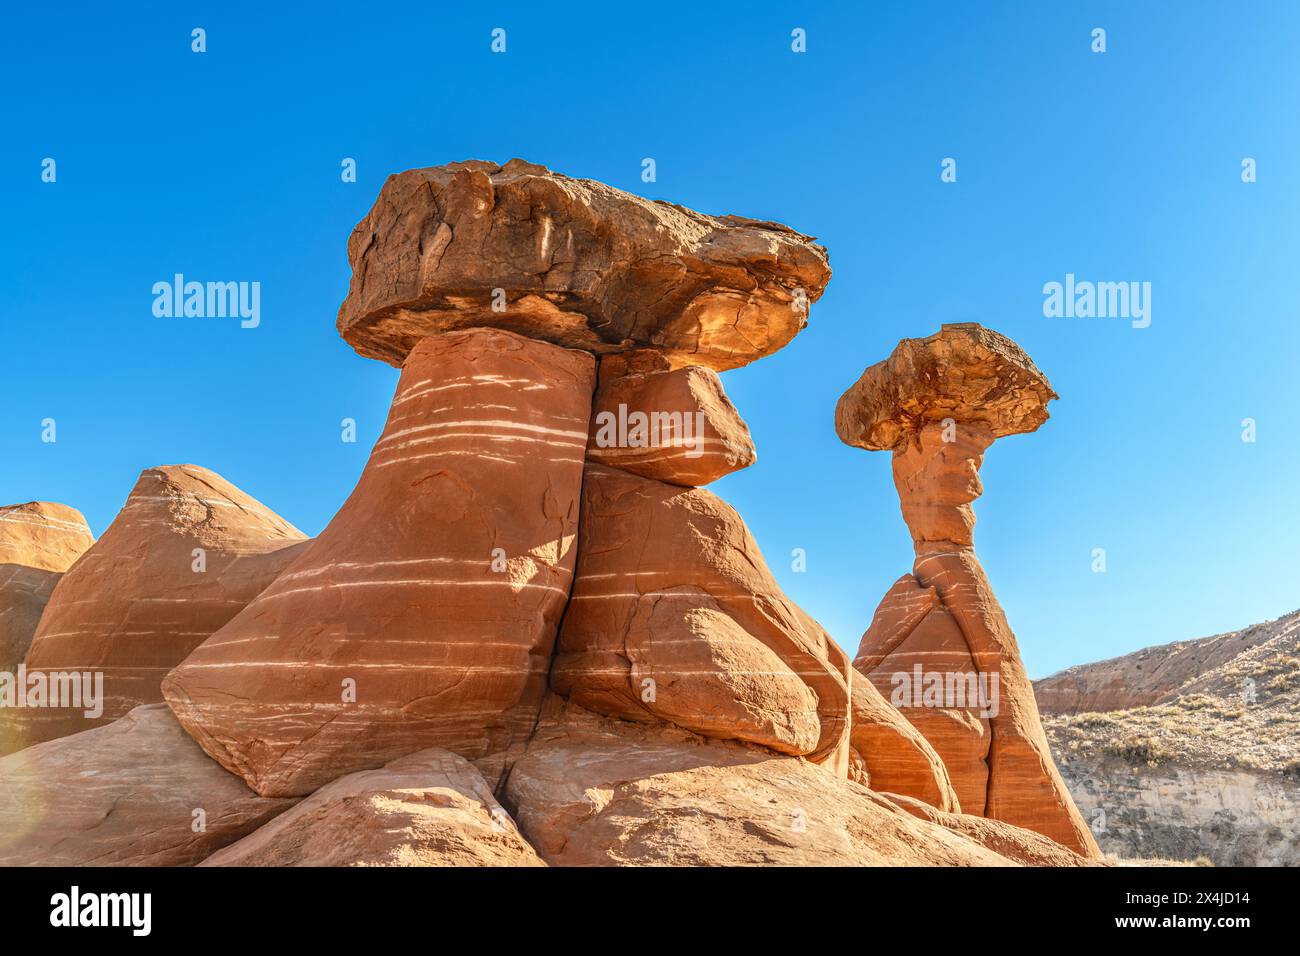 Lo hoodoo in pietra arenaria bianca e rossa a Kanab Utah mostra guglie altamente erose e rocce più dure bilanciate sulla parte superiore incorniciate da un cielo blu. Foto Stock